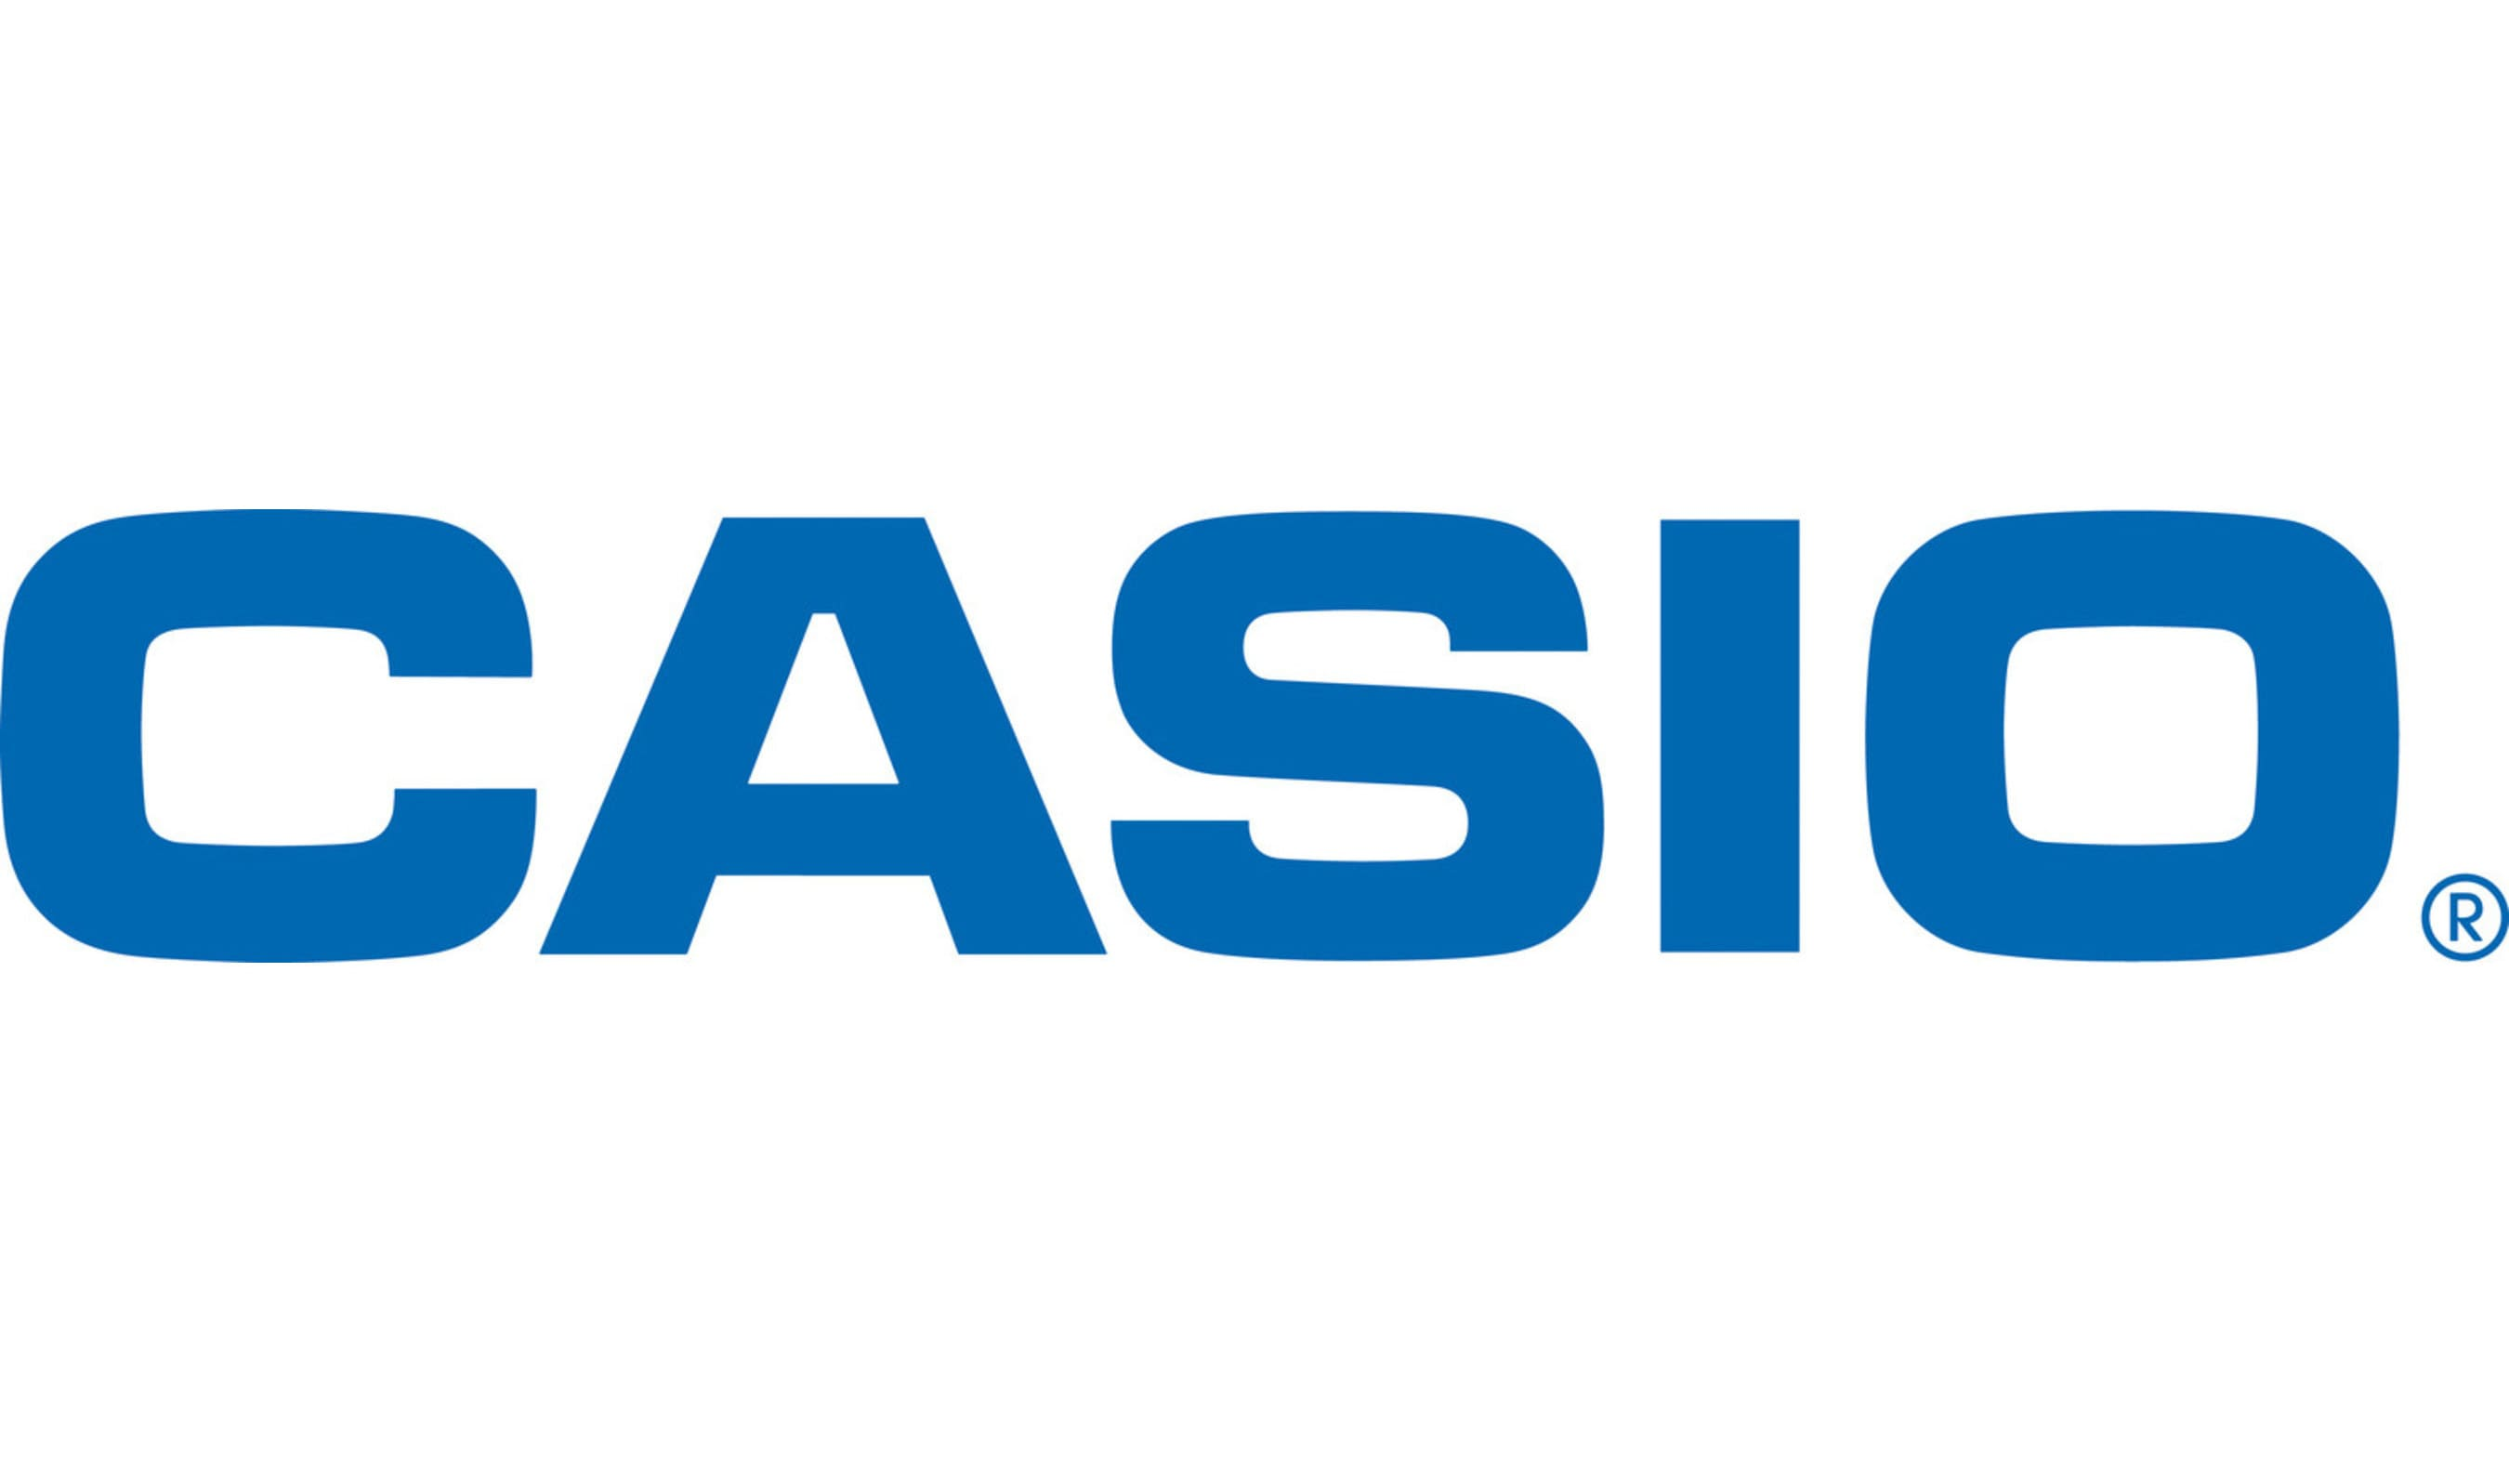 Casio piano logo